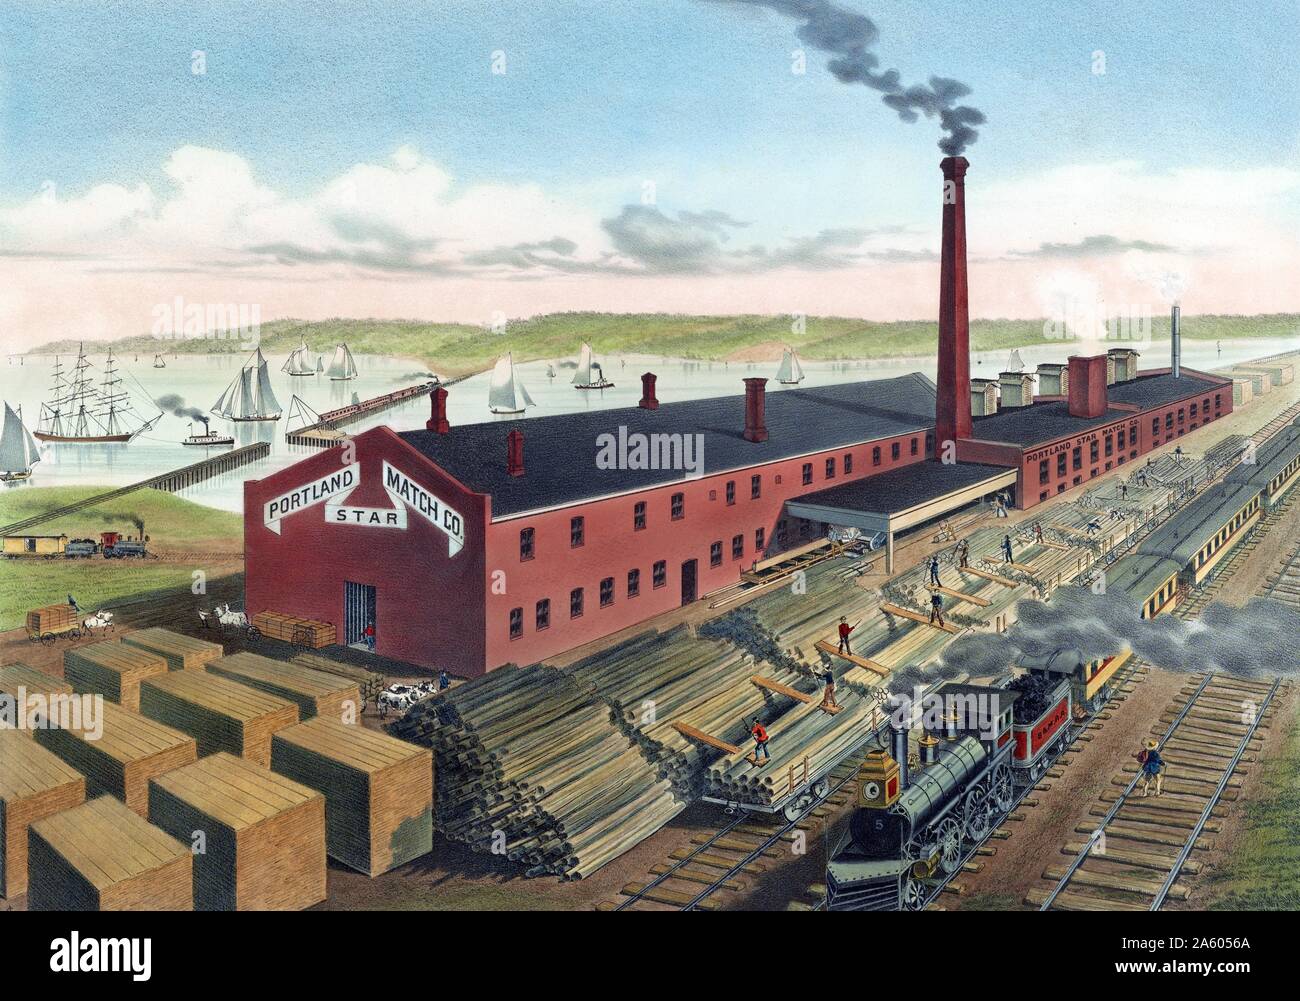 Portland star match factory, les travailleurs du bois de la pile en tant que passager de train à vapeur passe. 1860-1880. Banque D'Images